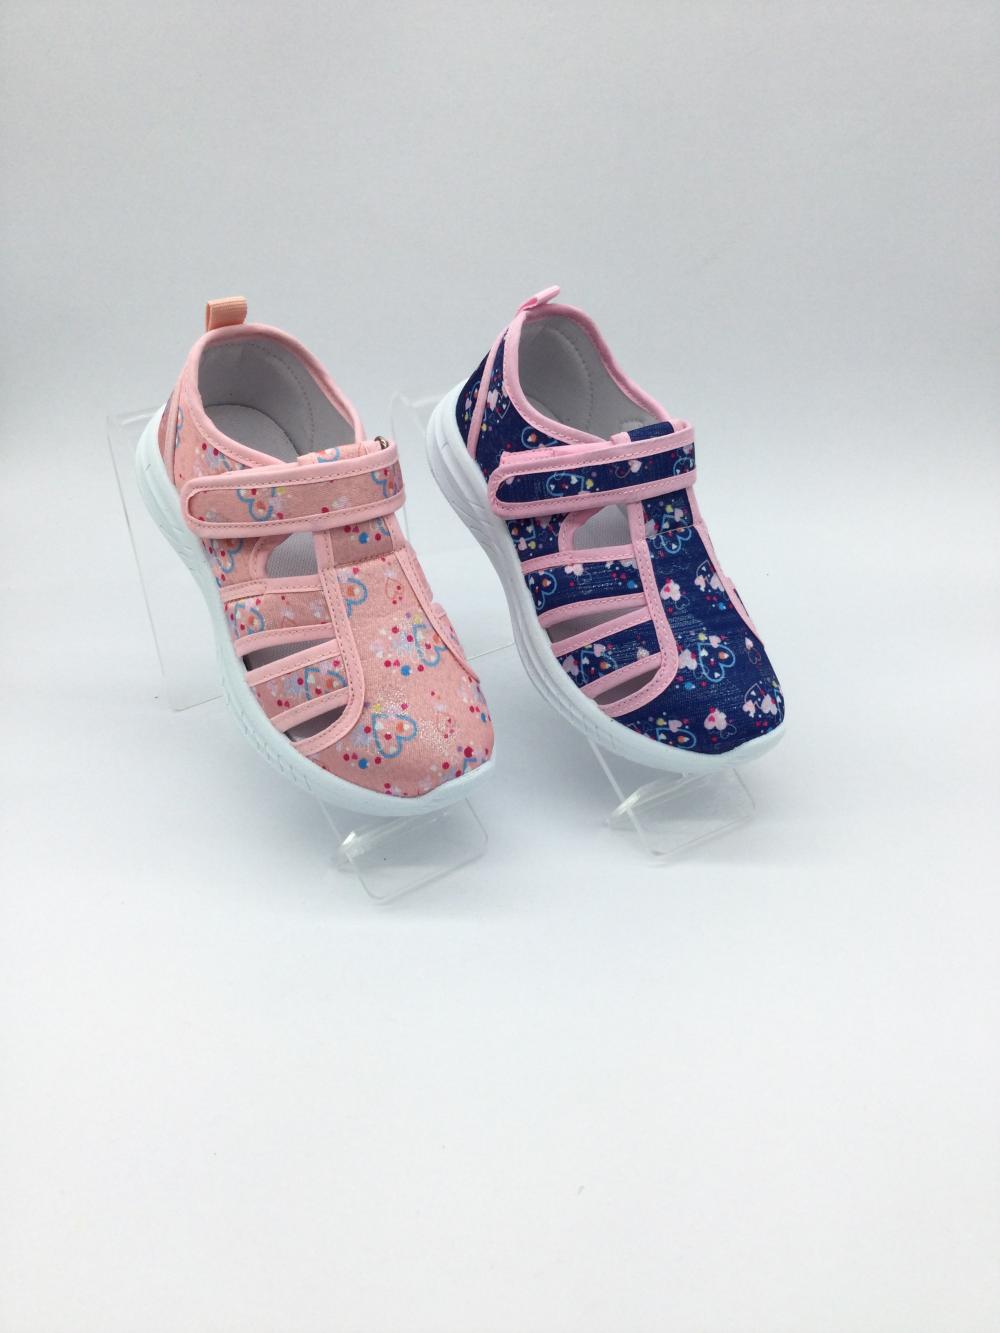 Chaussure de sandale de sandale de style bébé fille bébé fille